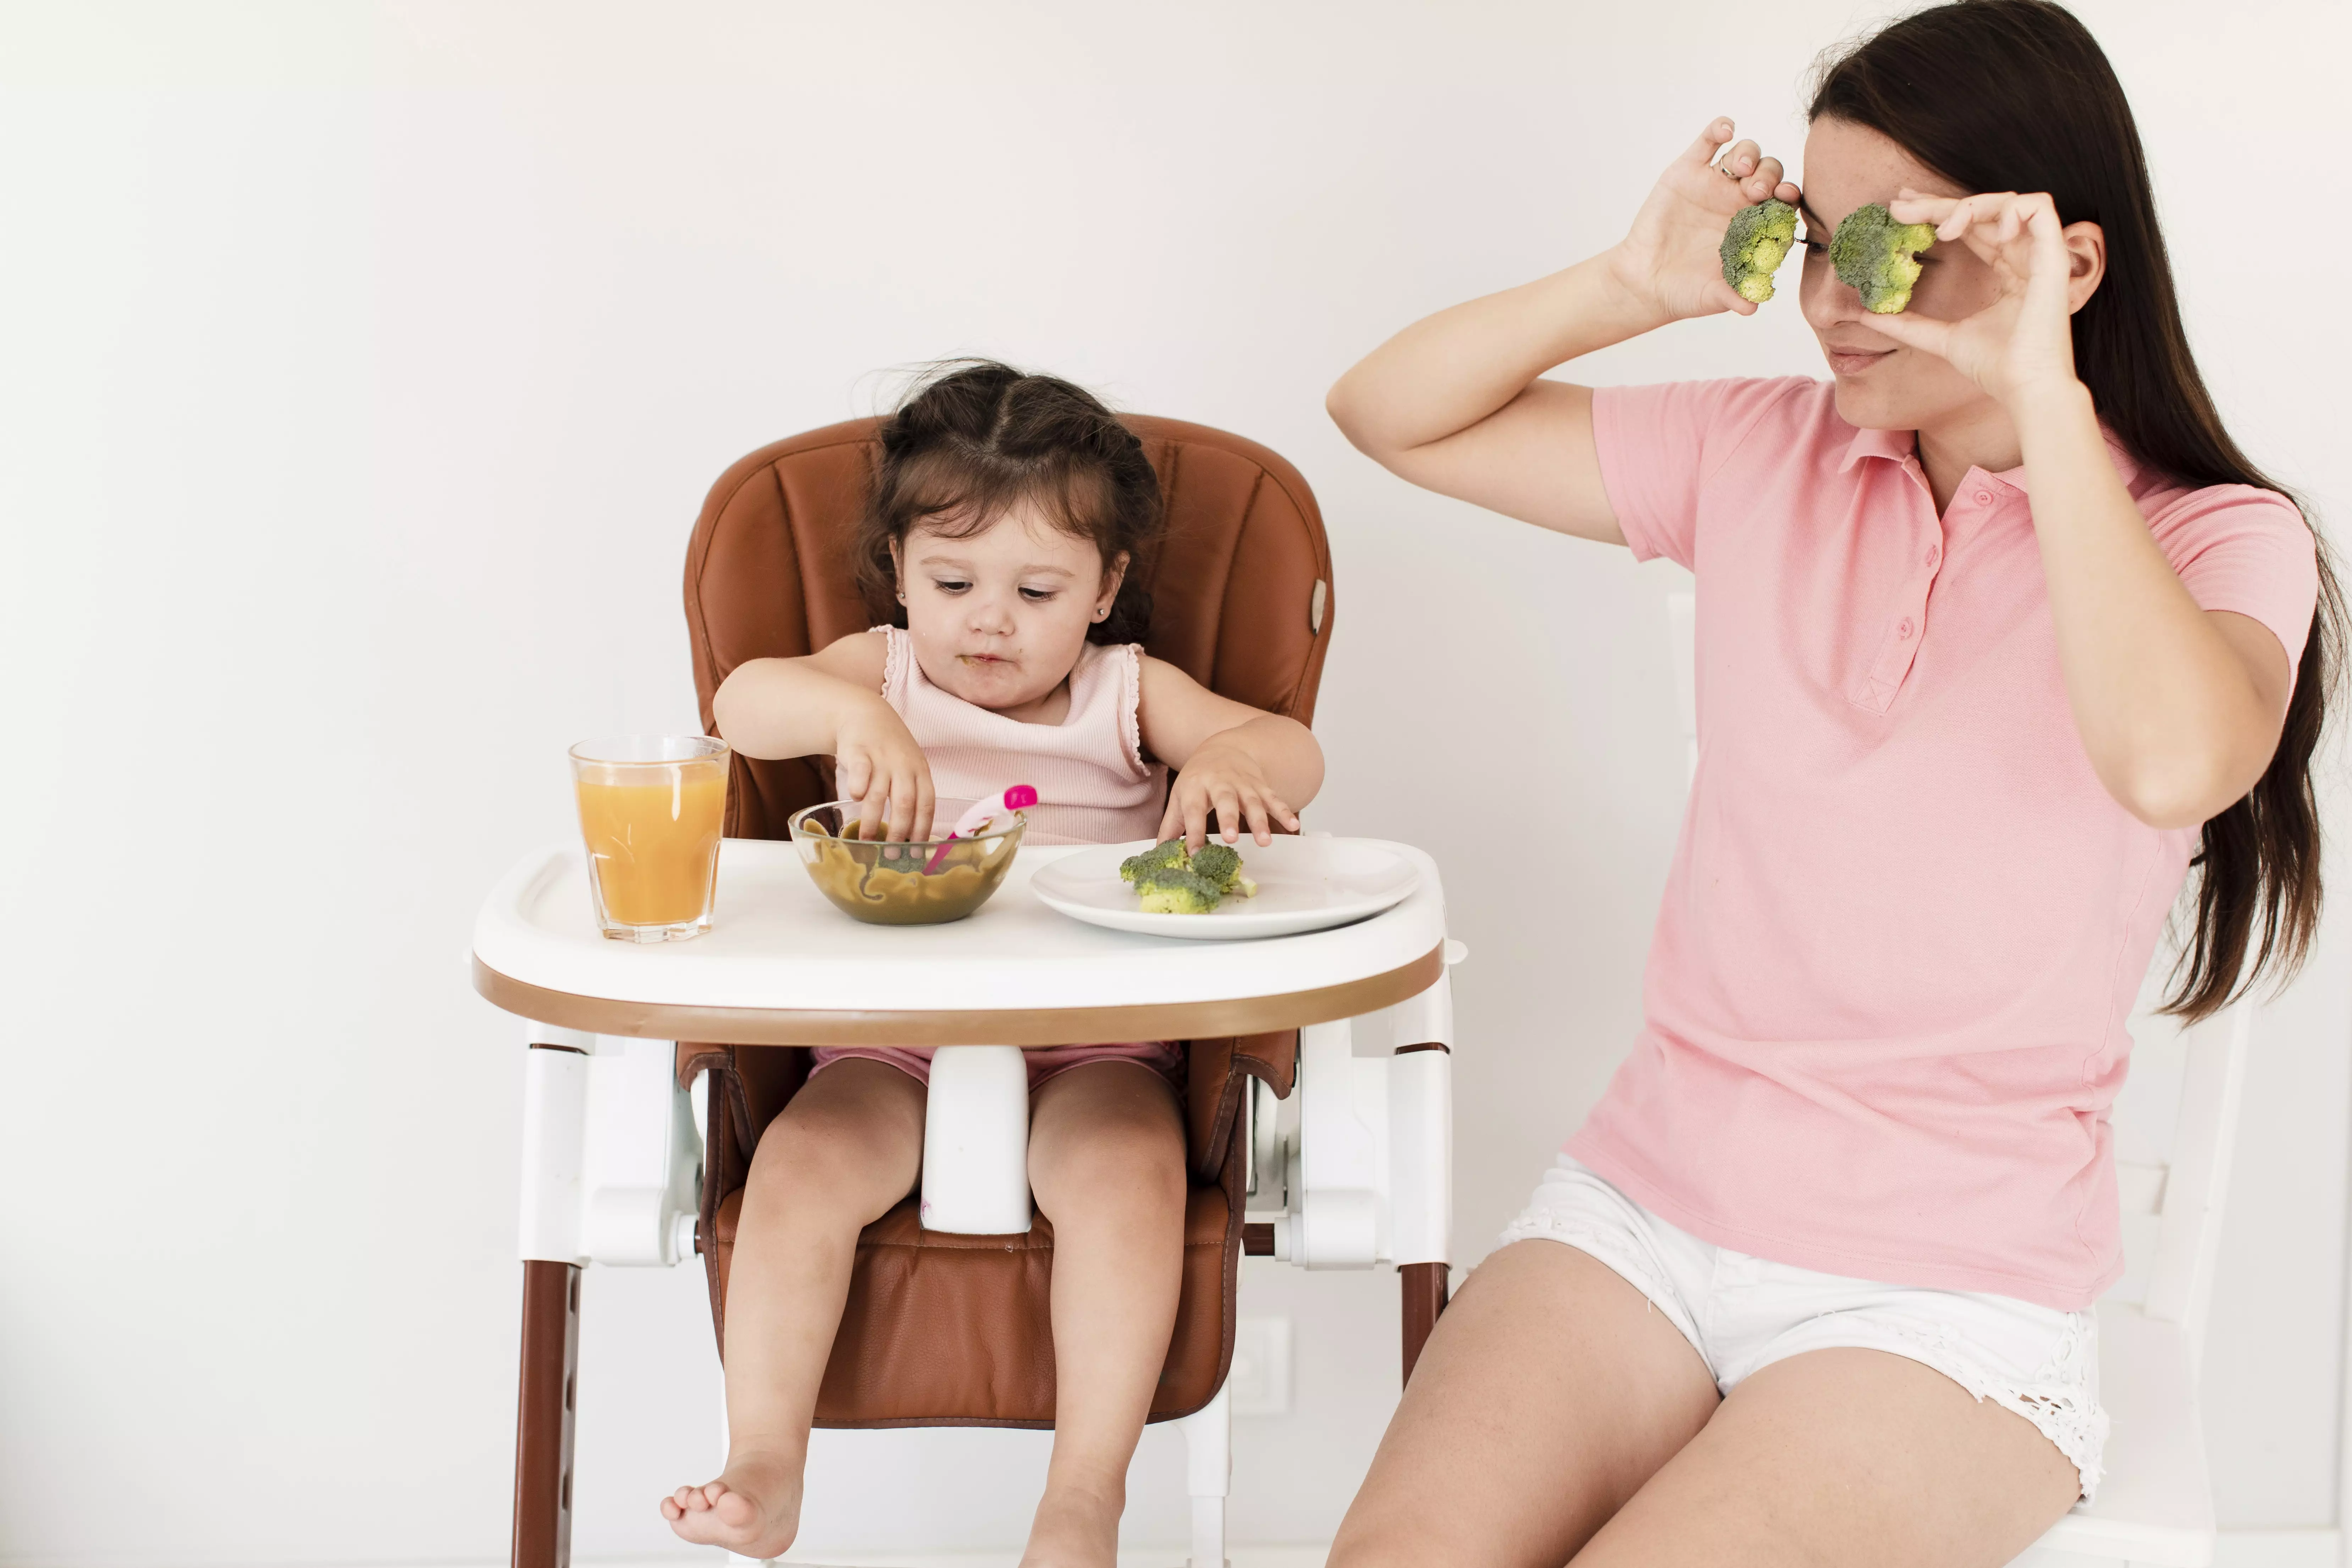 Не включайте ребенку мультики во время еды, также лучше не давать сок, тем более пакетированный